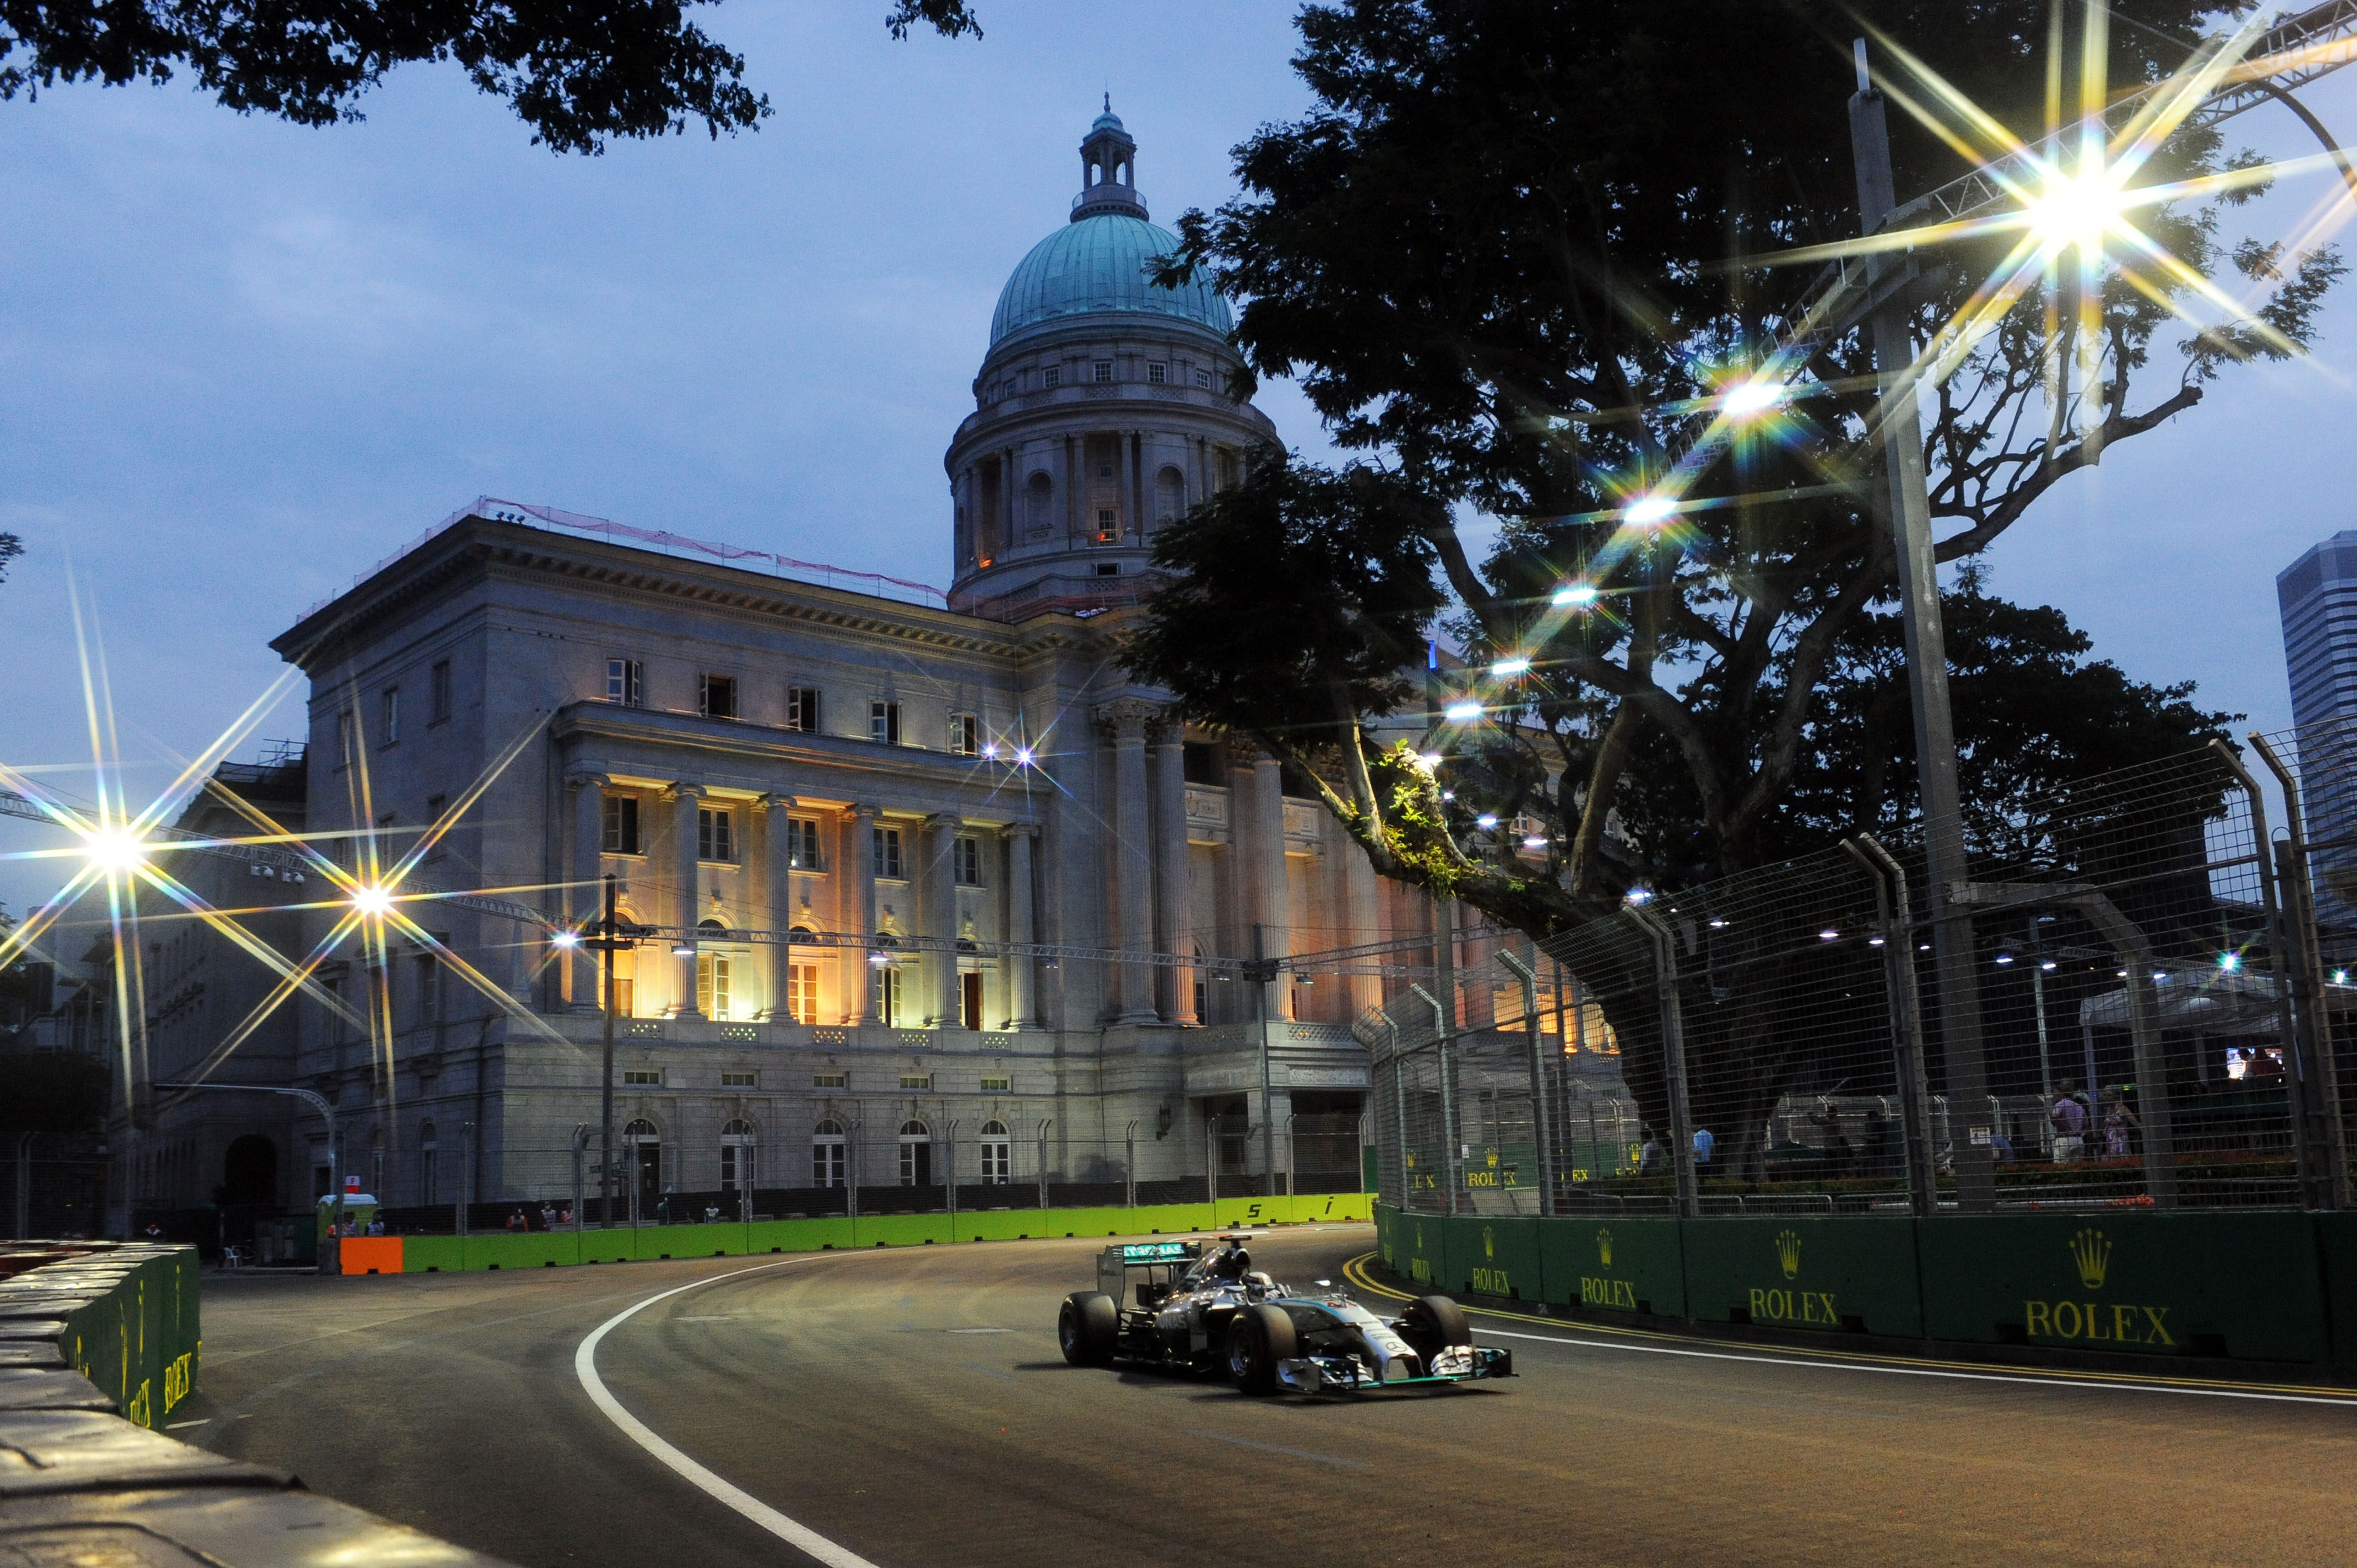 Kwalificatie: Hamilton een haartje sneller dan Rosberg